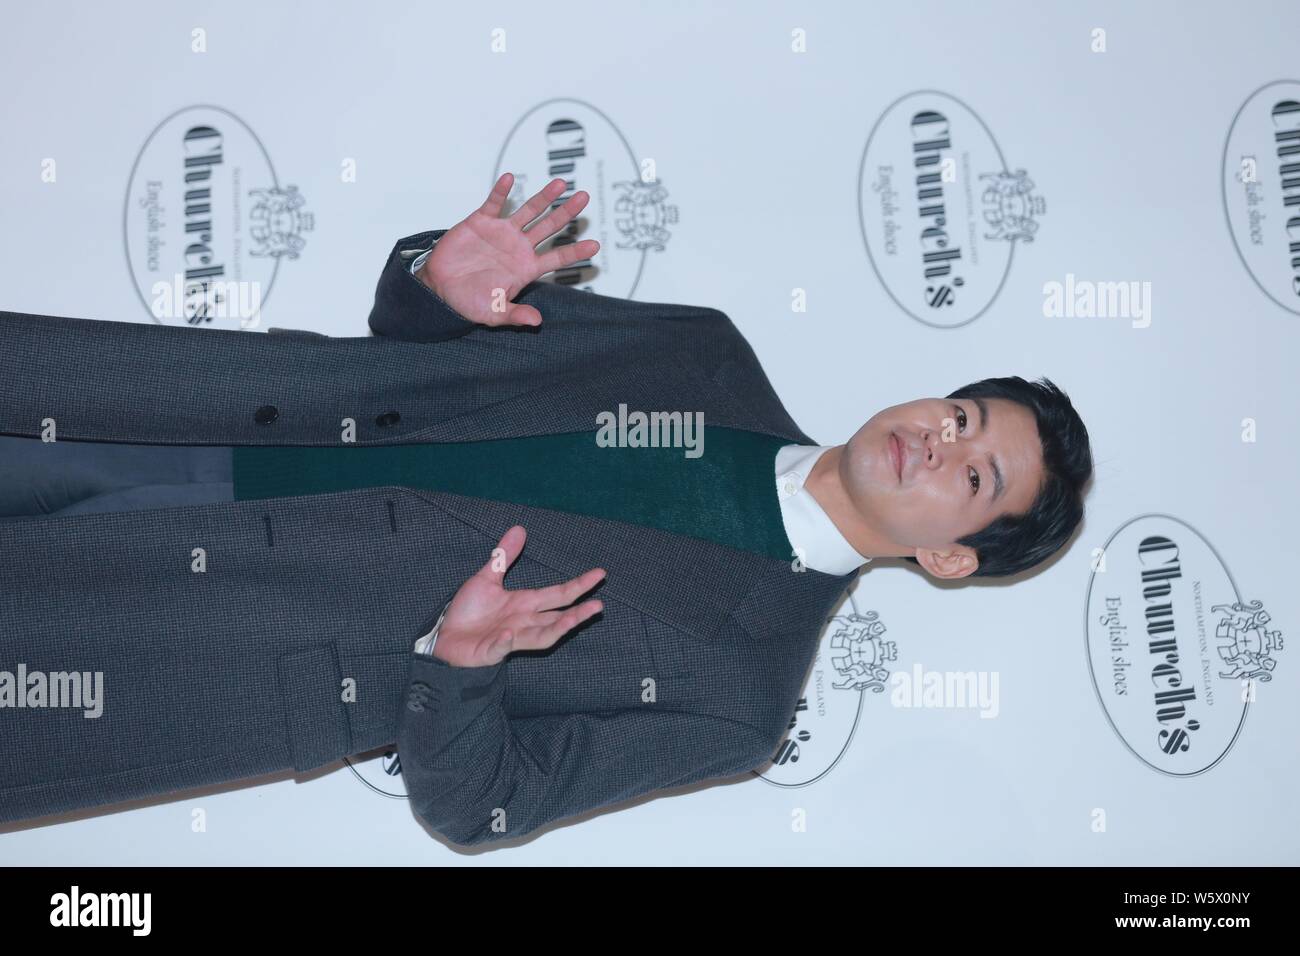 L'acteur sud-coréen Lee Sang-yoon assiste à un événement promotionnel pour l'Église à Séoul, Corée du Sud, le 14 novembre 2018. Banque D'Images